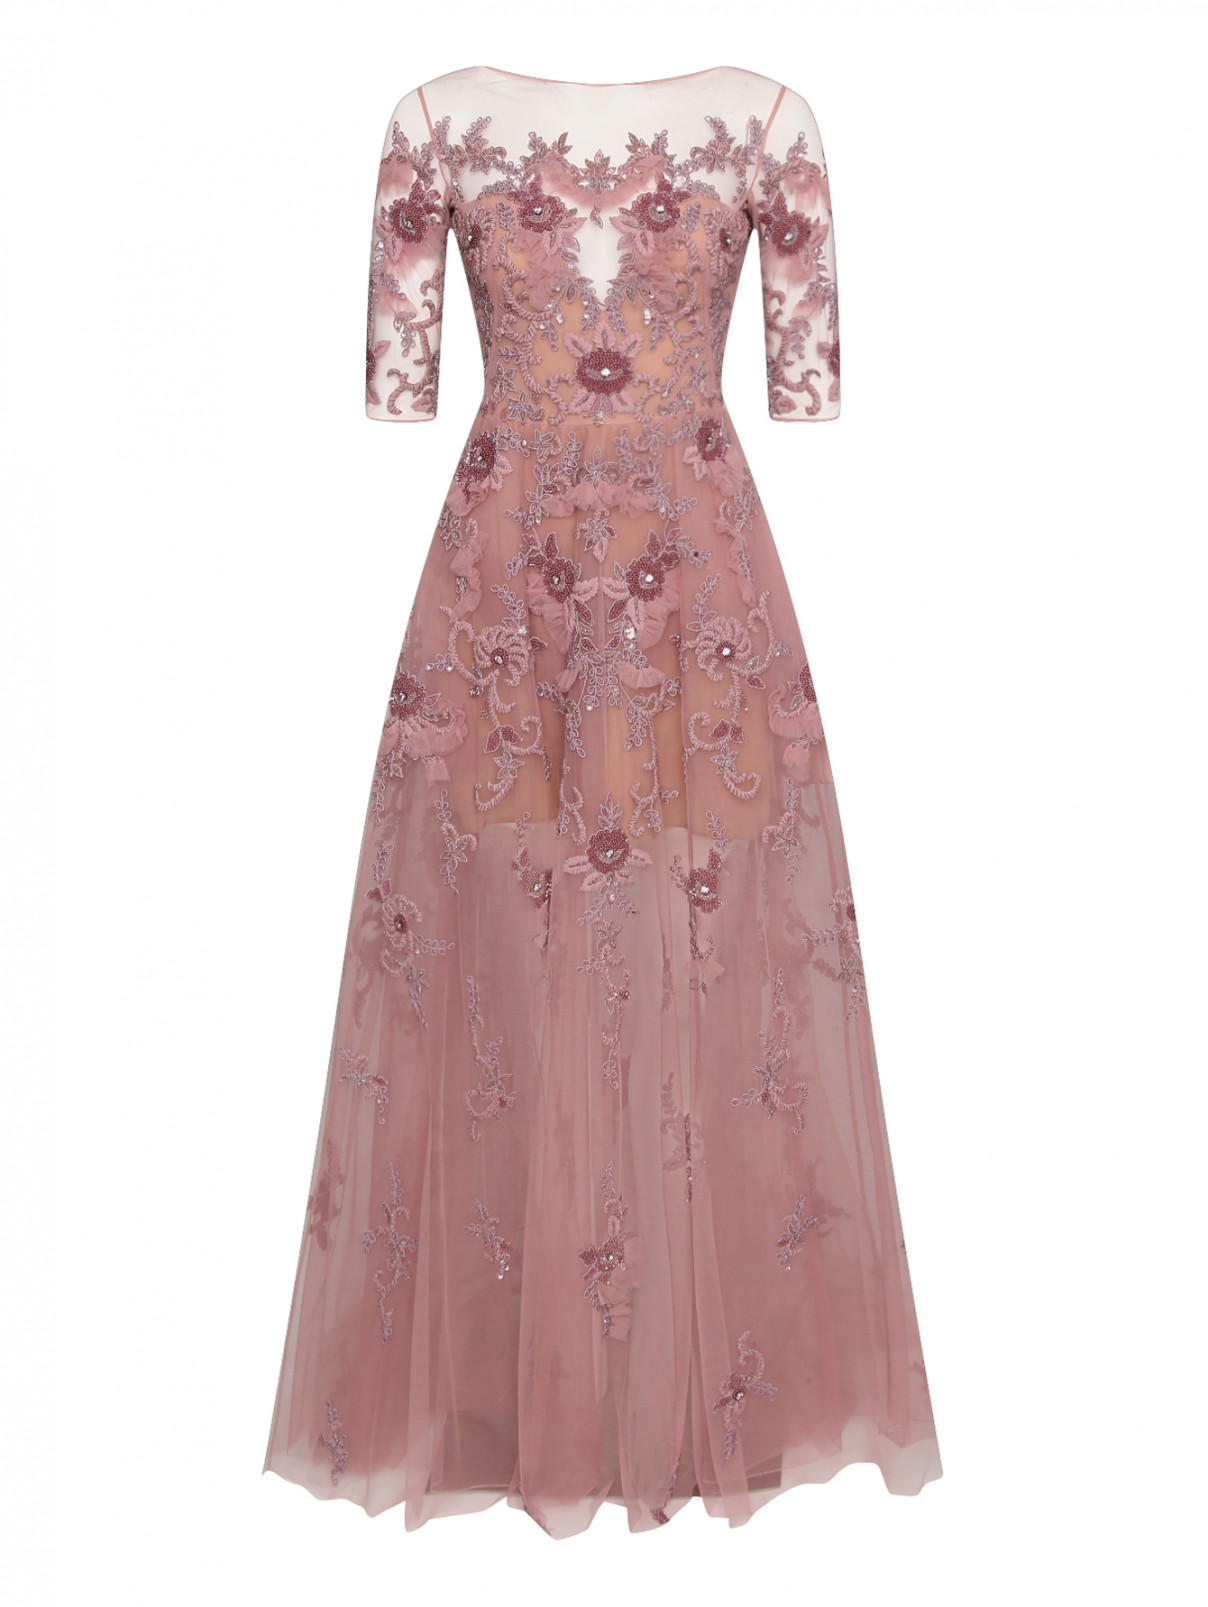 Платье-макси с декоративной аппликацией Zuhair Murad  –  Общий вид  – Цвет:  Розовый